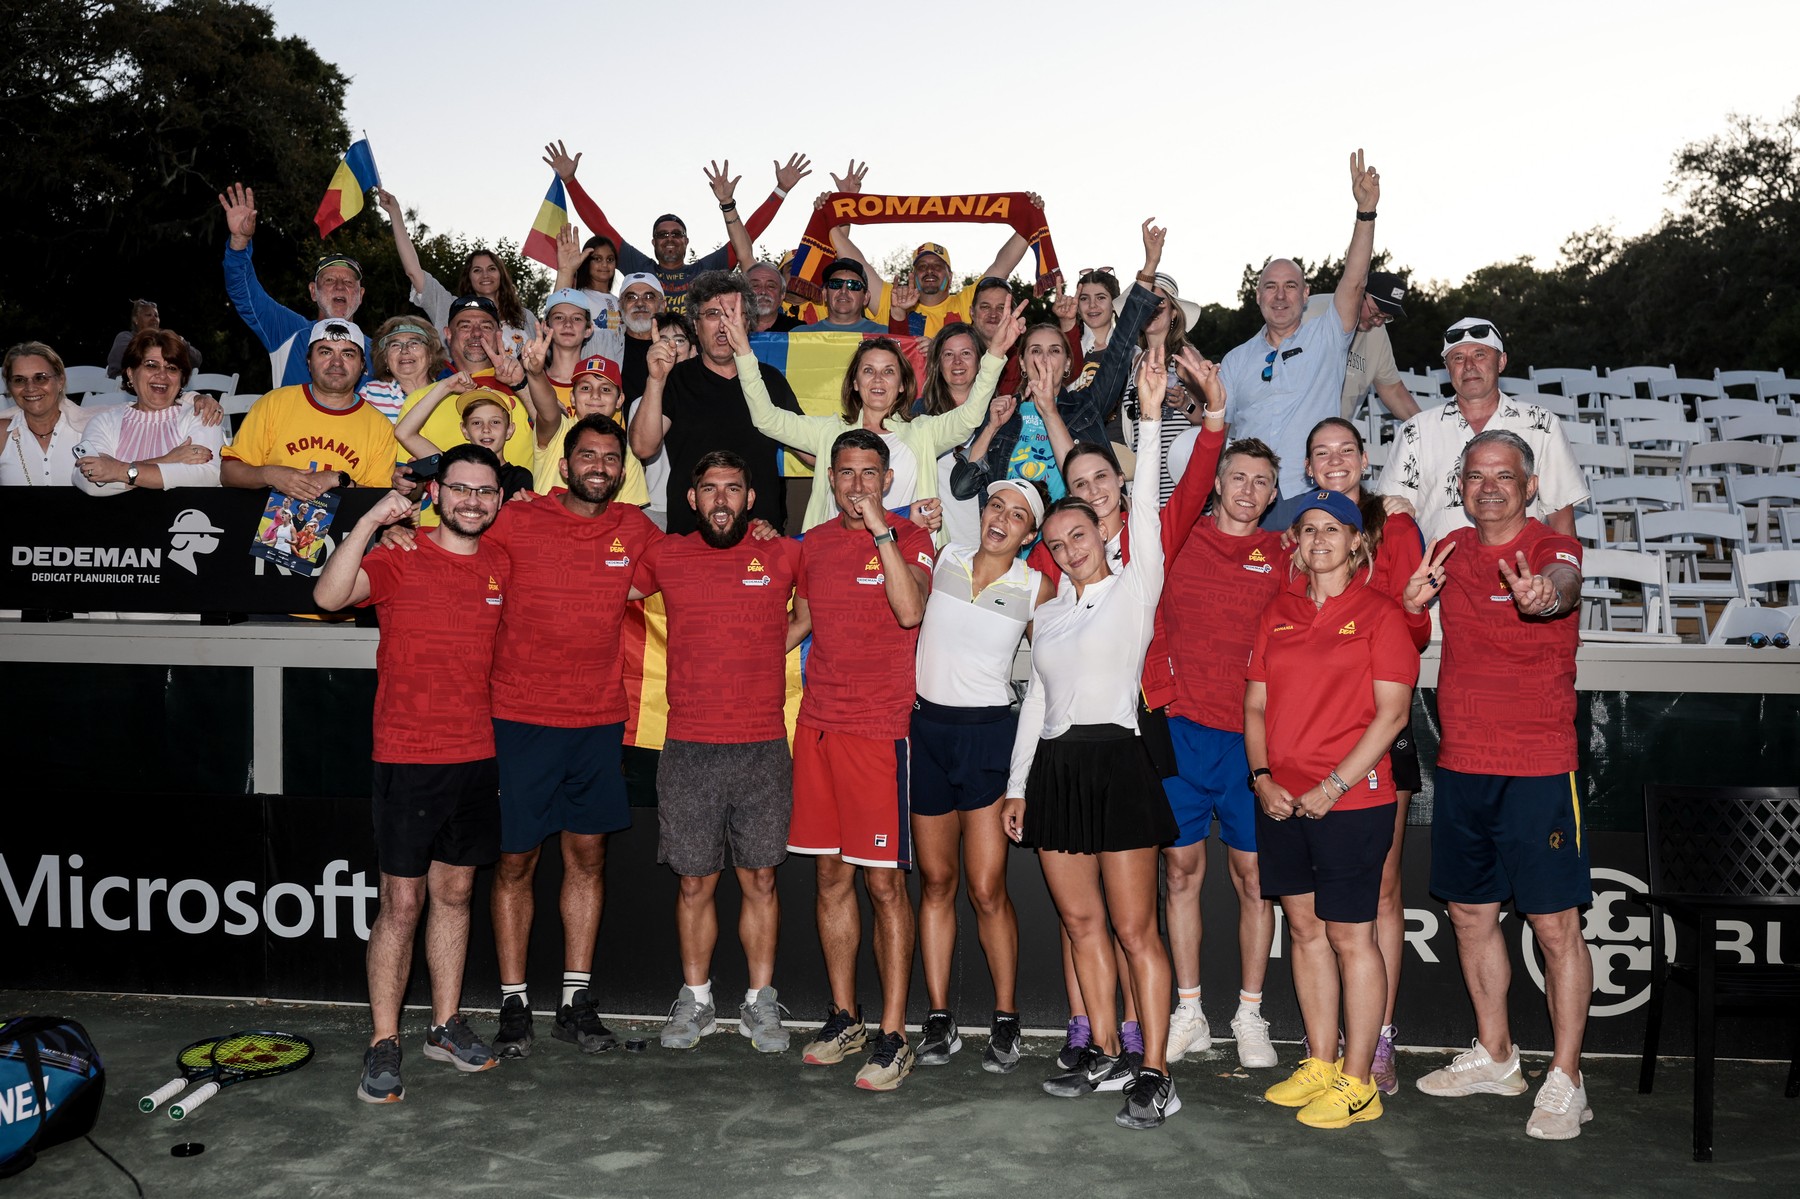 Bucurie fără margini după calificarea României la turneul final al BJKC: ”Am revenit în elita tenisului!”